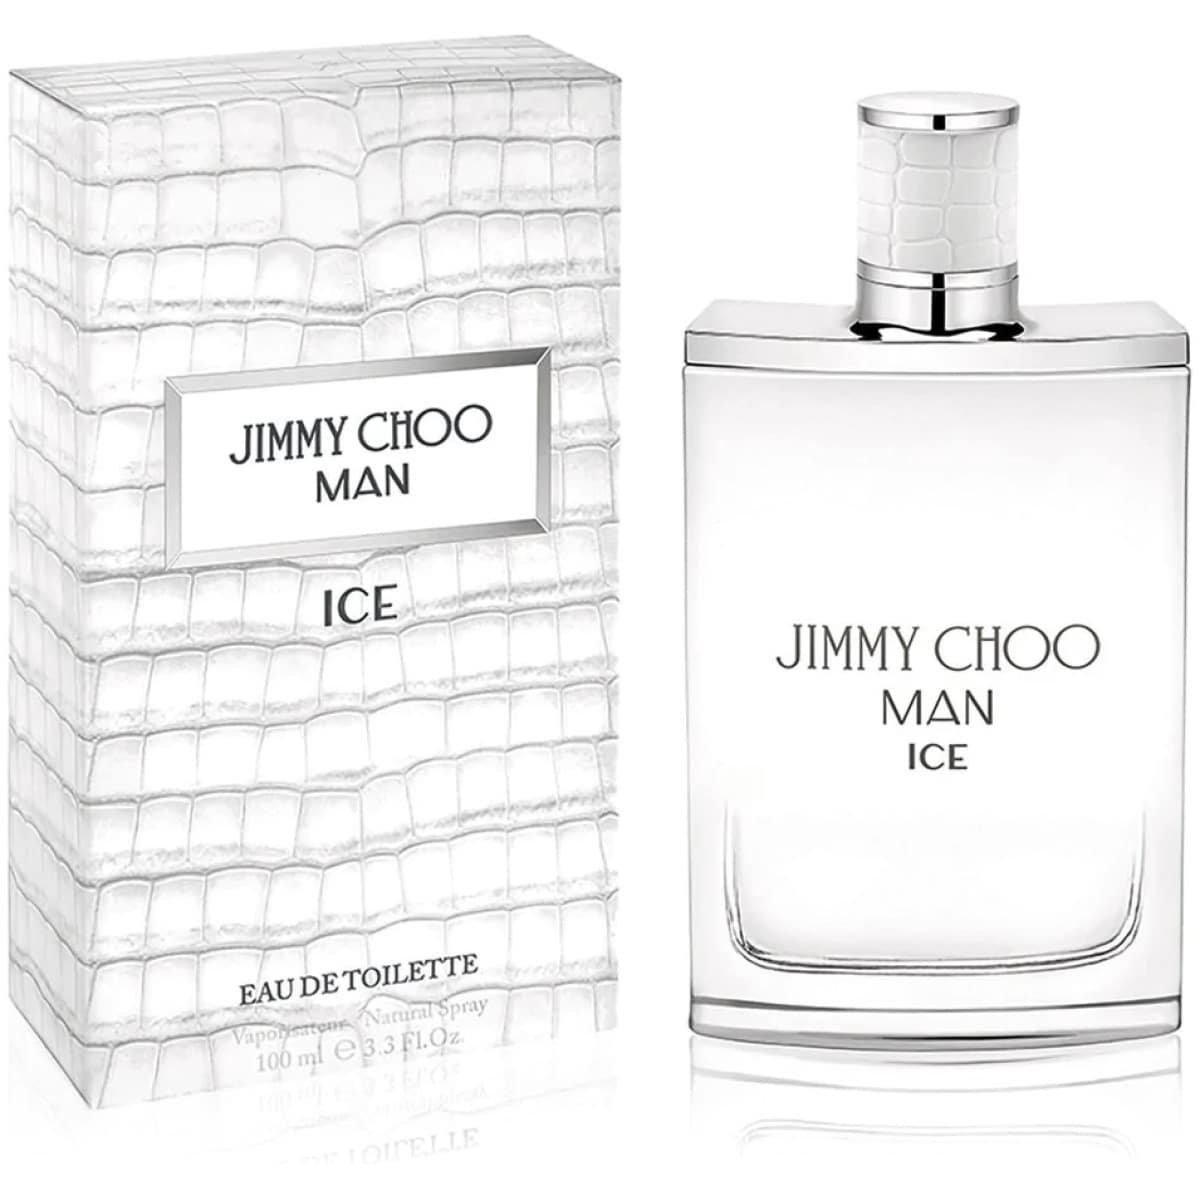 Jimmy Choo Man Ice EDT Perfume For Men 100 ml